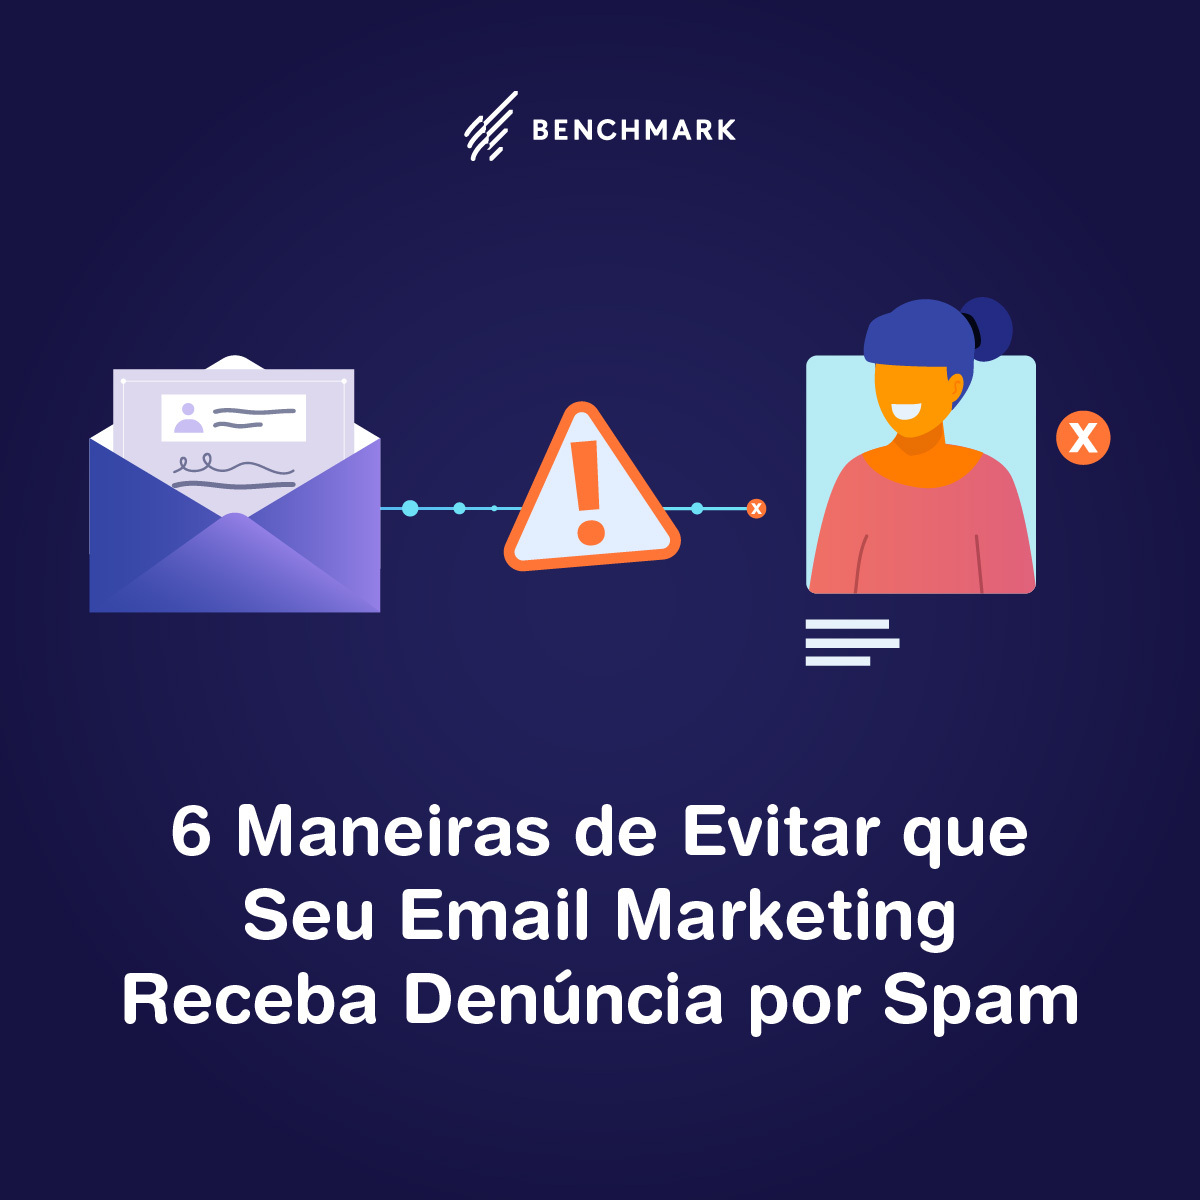 6 maneiras de evitar que seu email marketing receba denúncia por spam